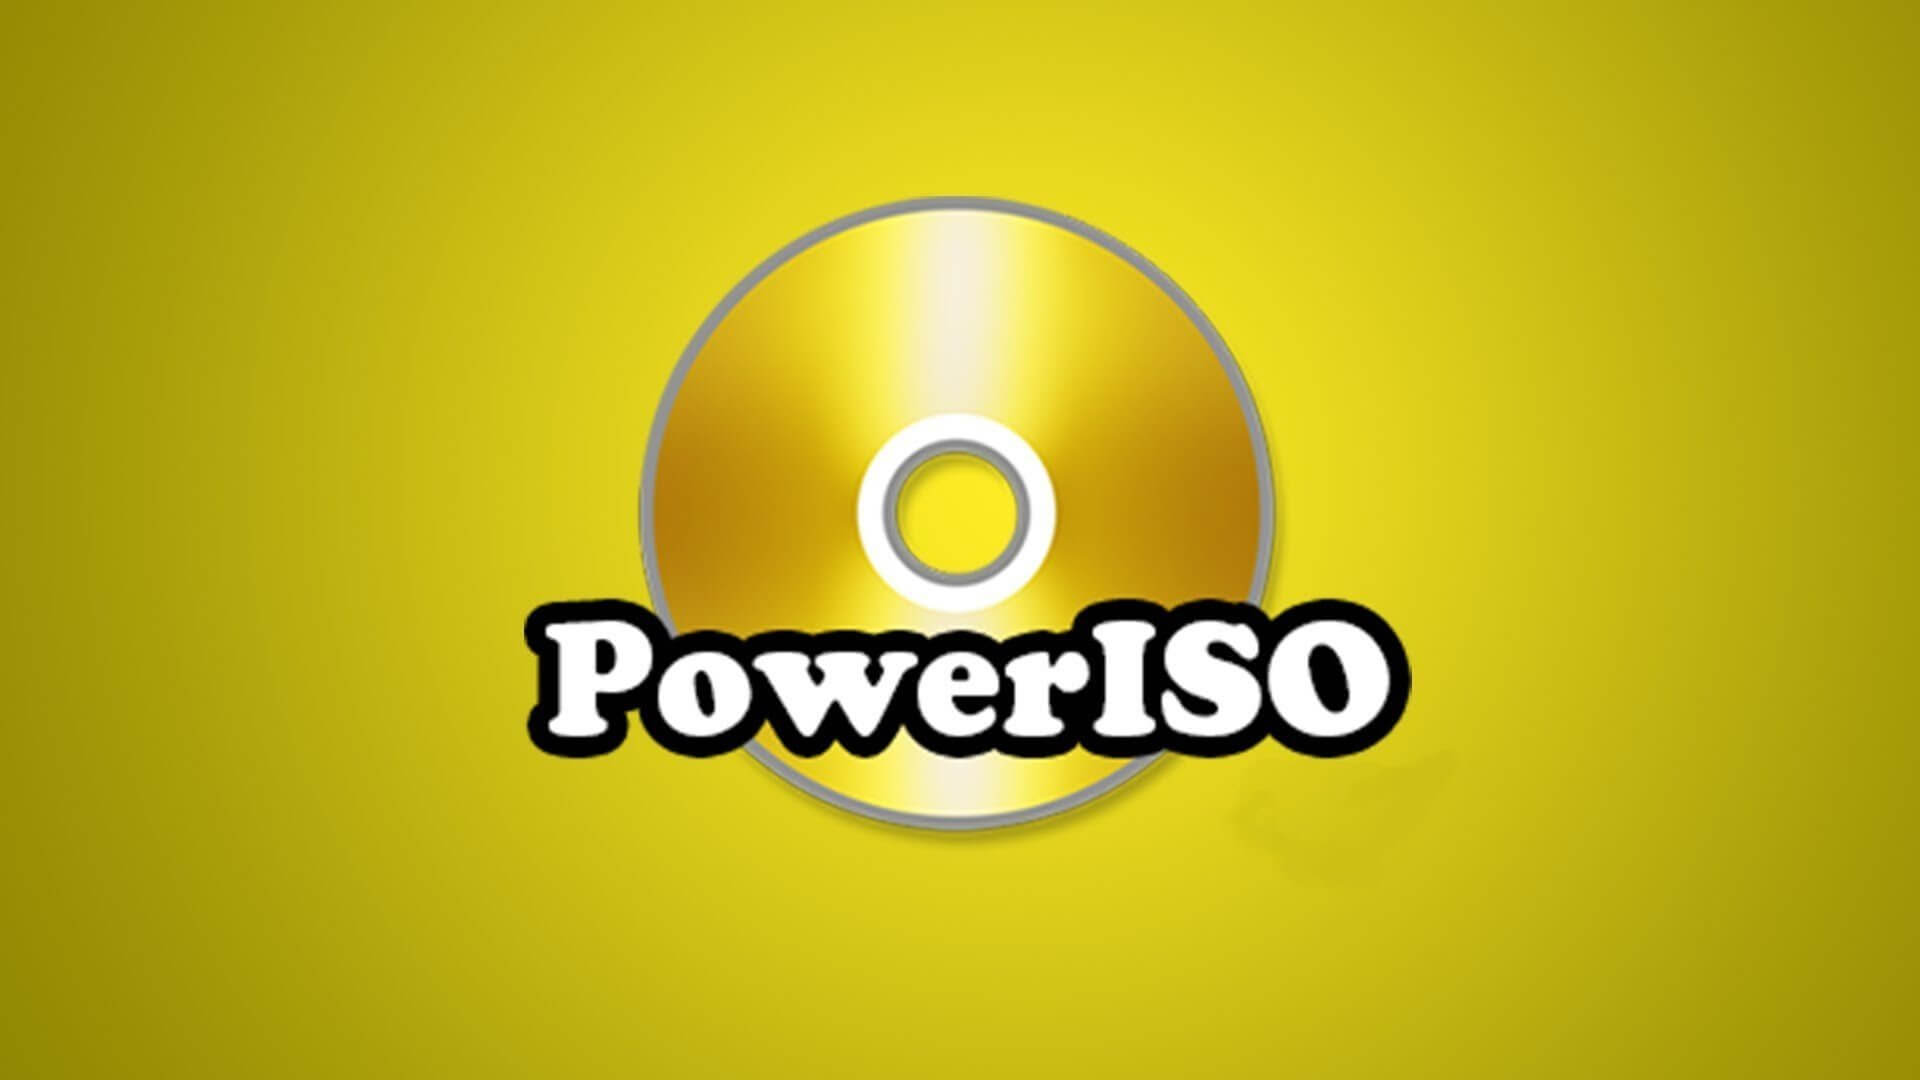 Download Power ISO Full Crack